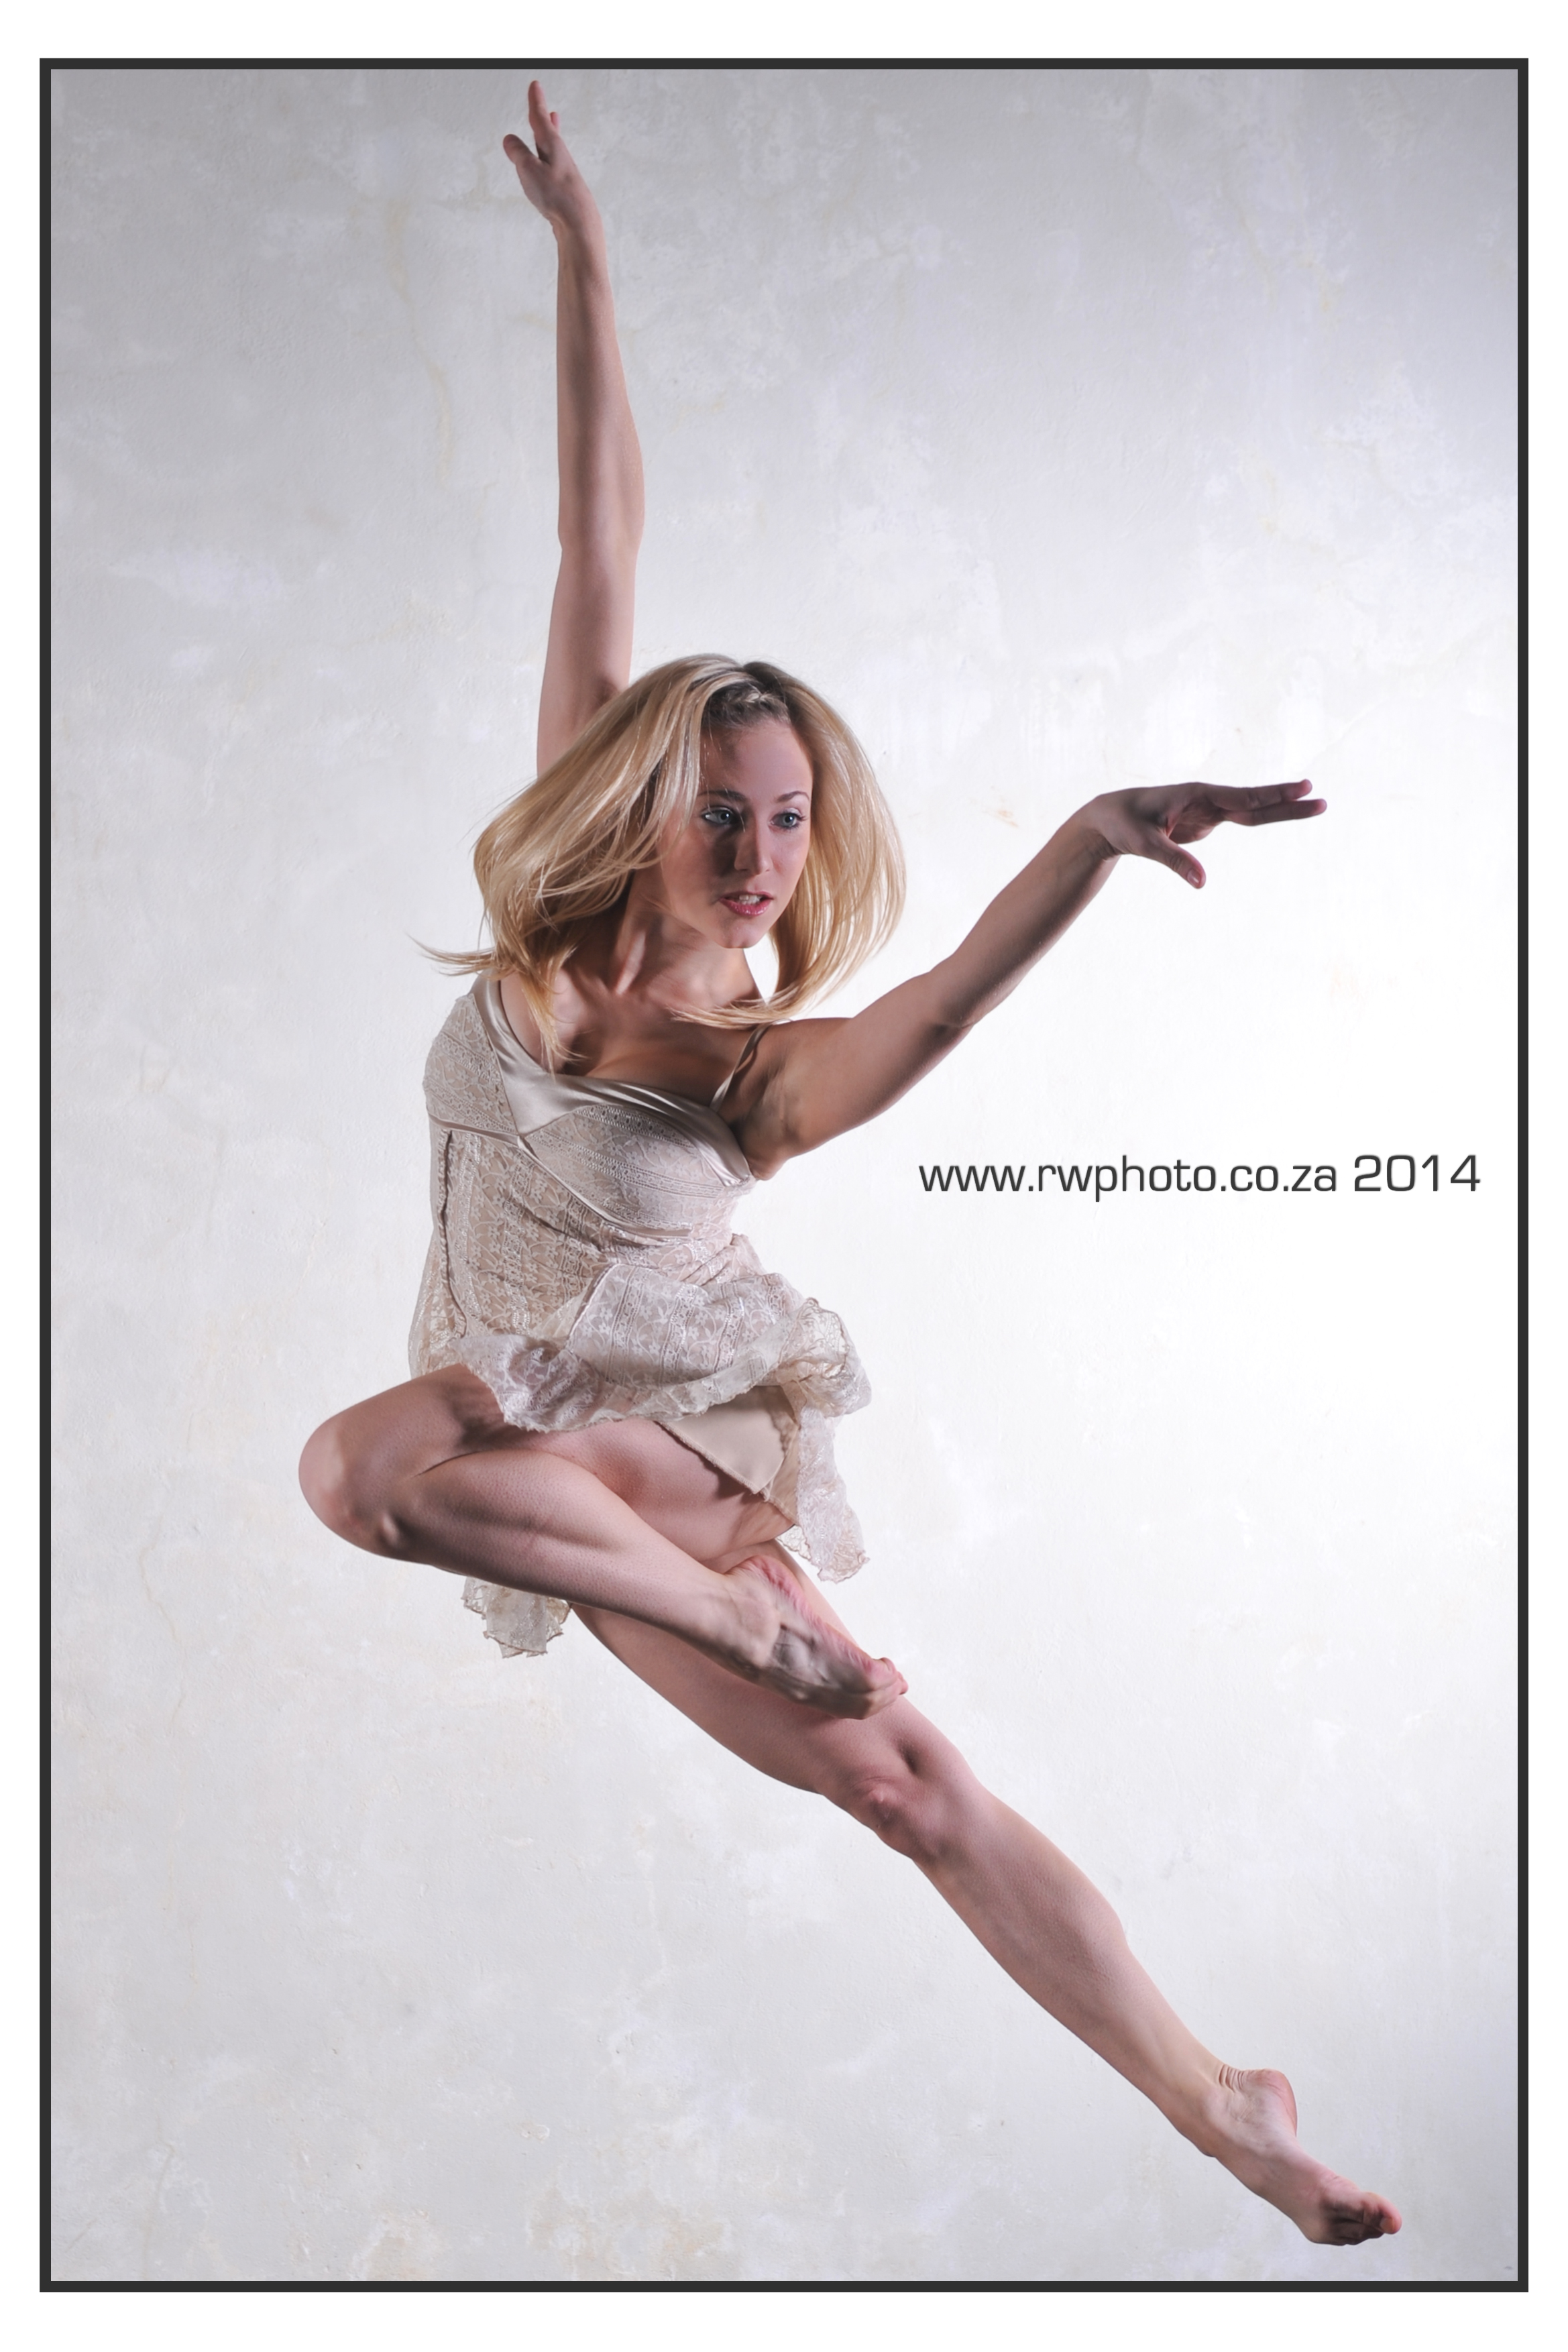 Michelle van der Nest Dancer